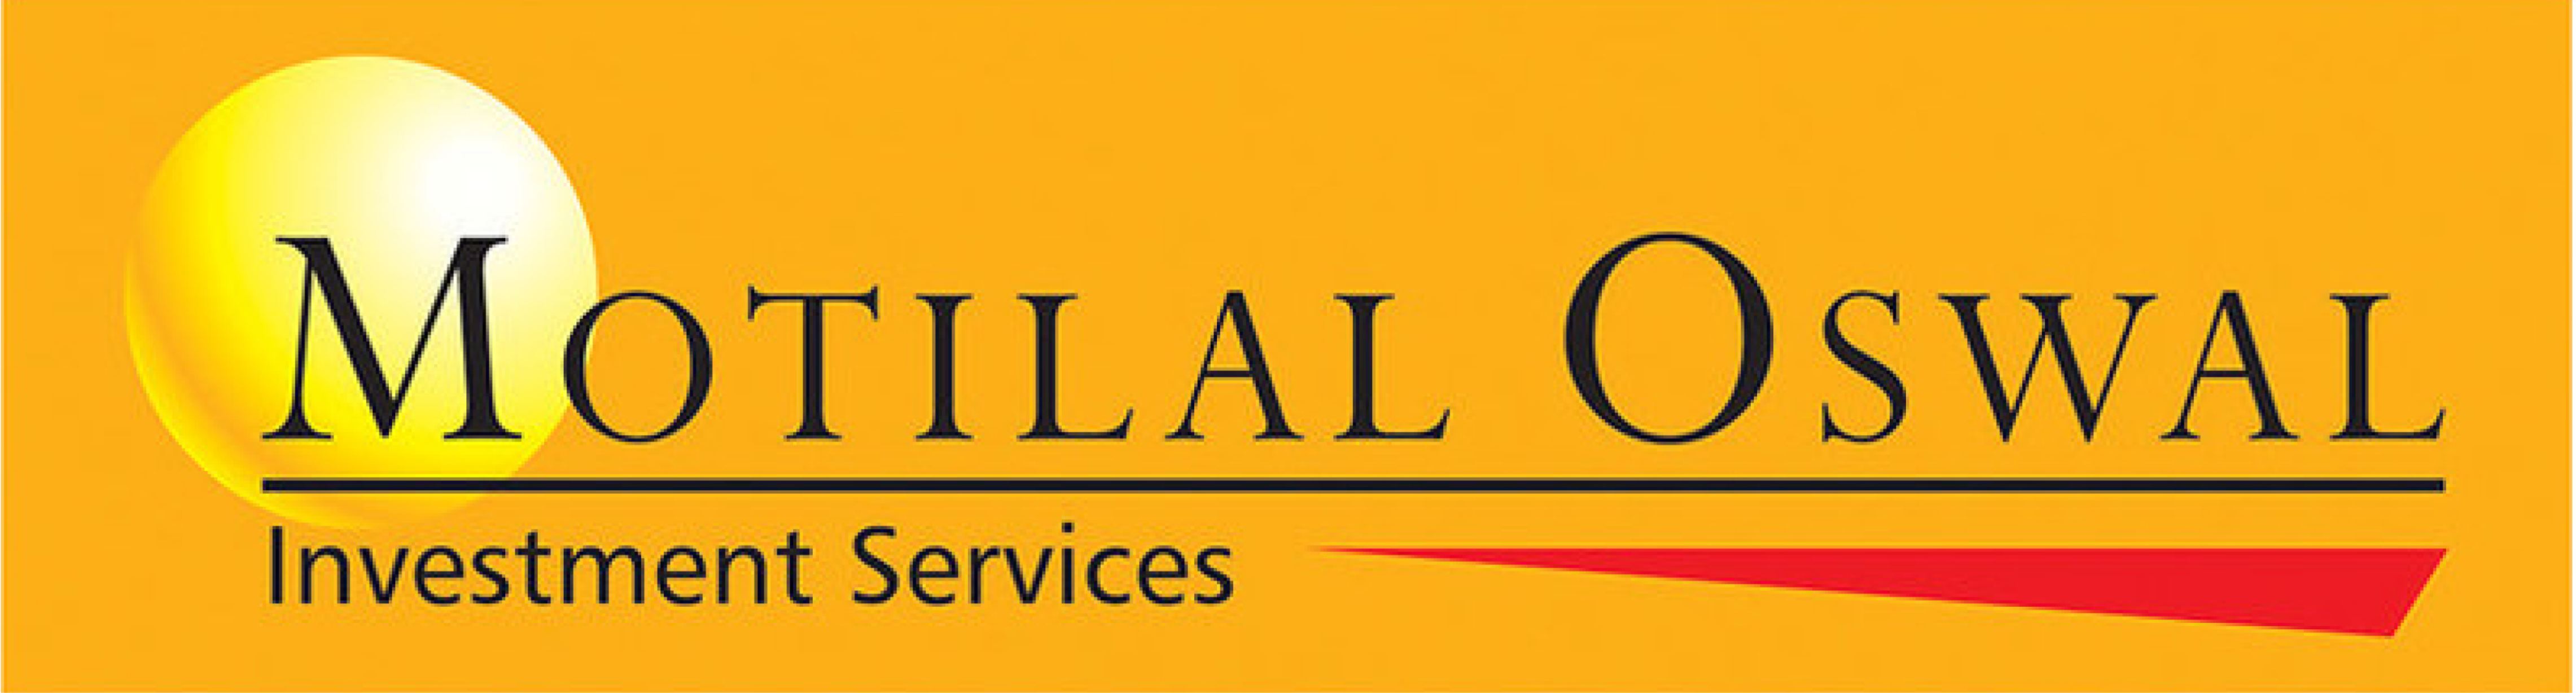 Motilal Oswal Logo - ChitkaraU Online